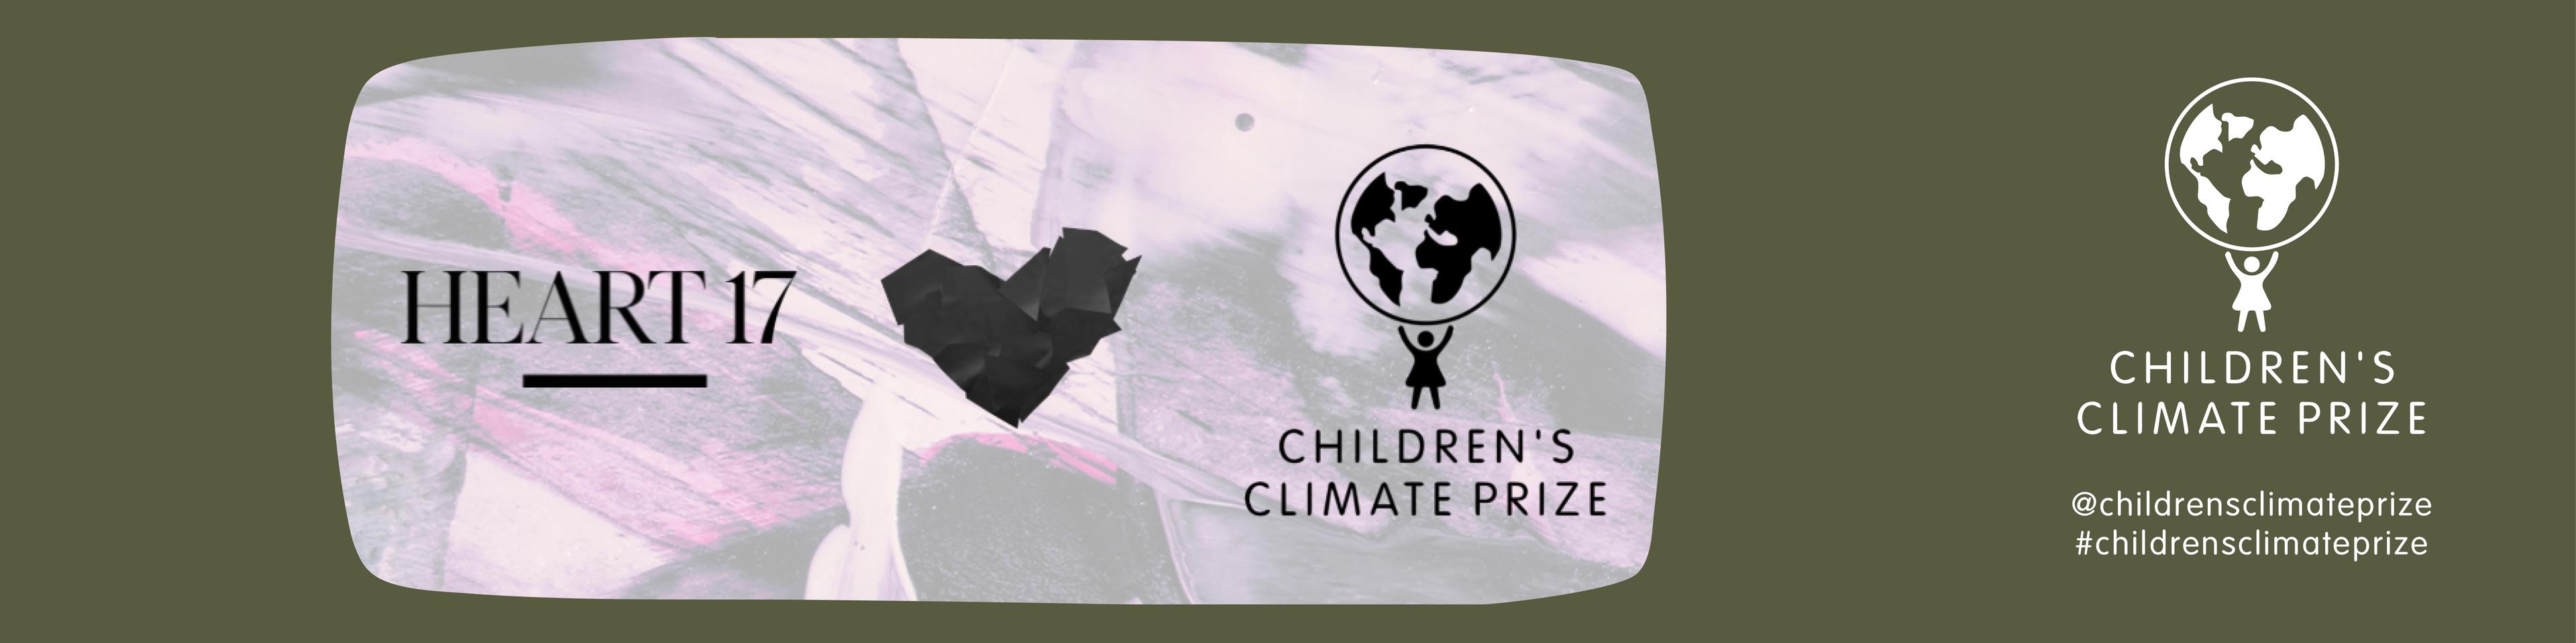 banner Telge Energi Children's Climate Prize samarbete HEART 17